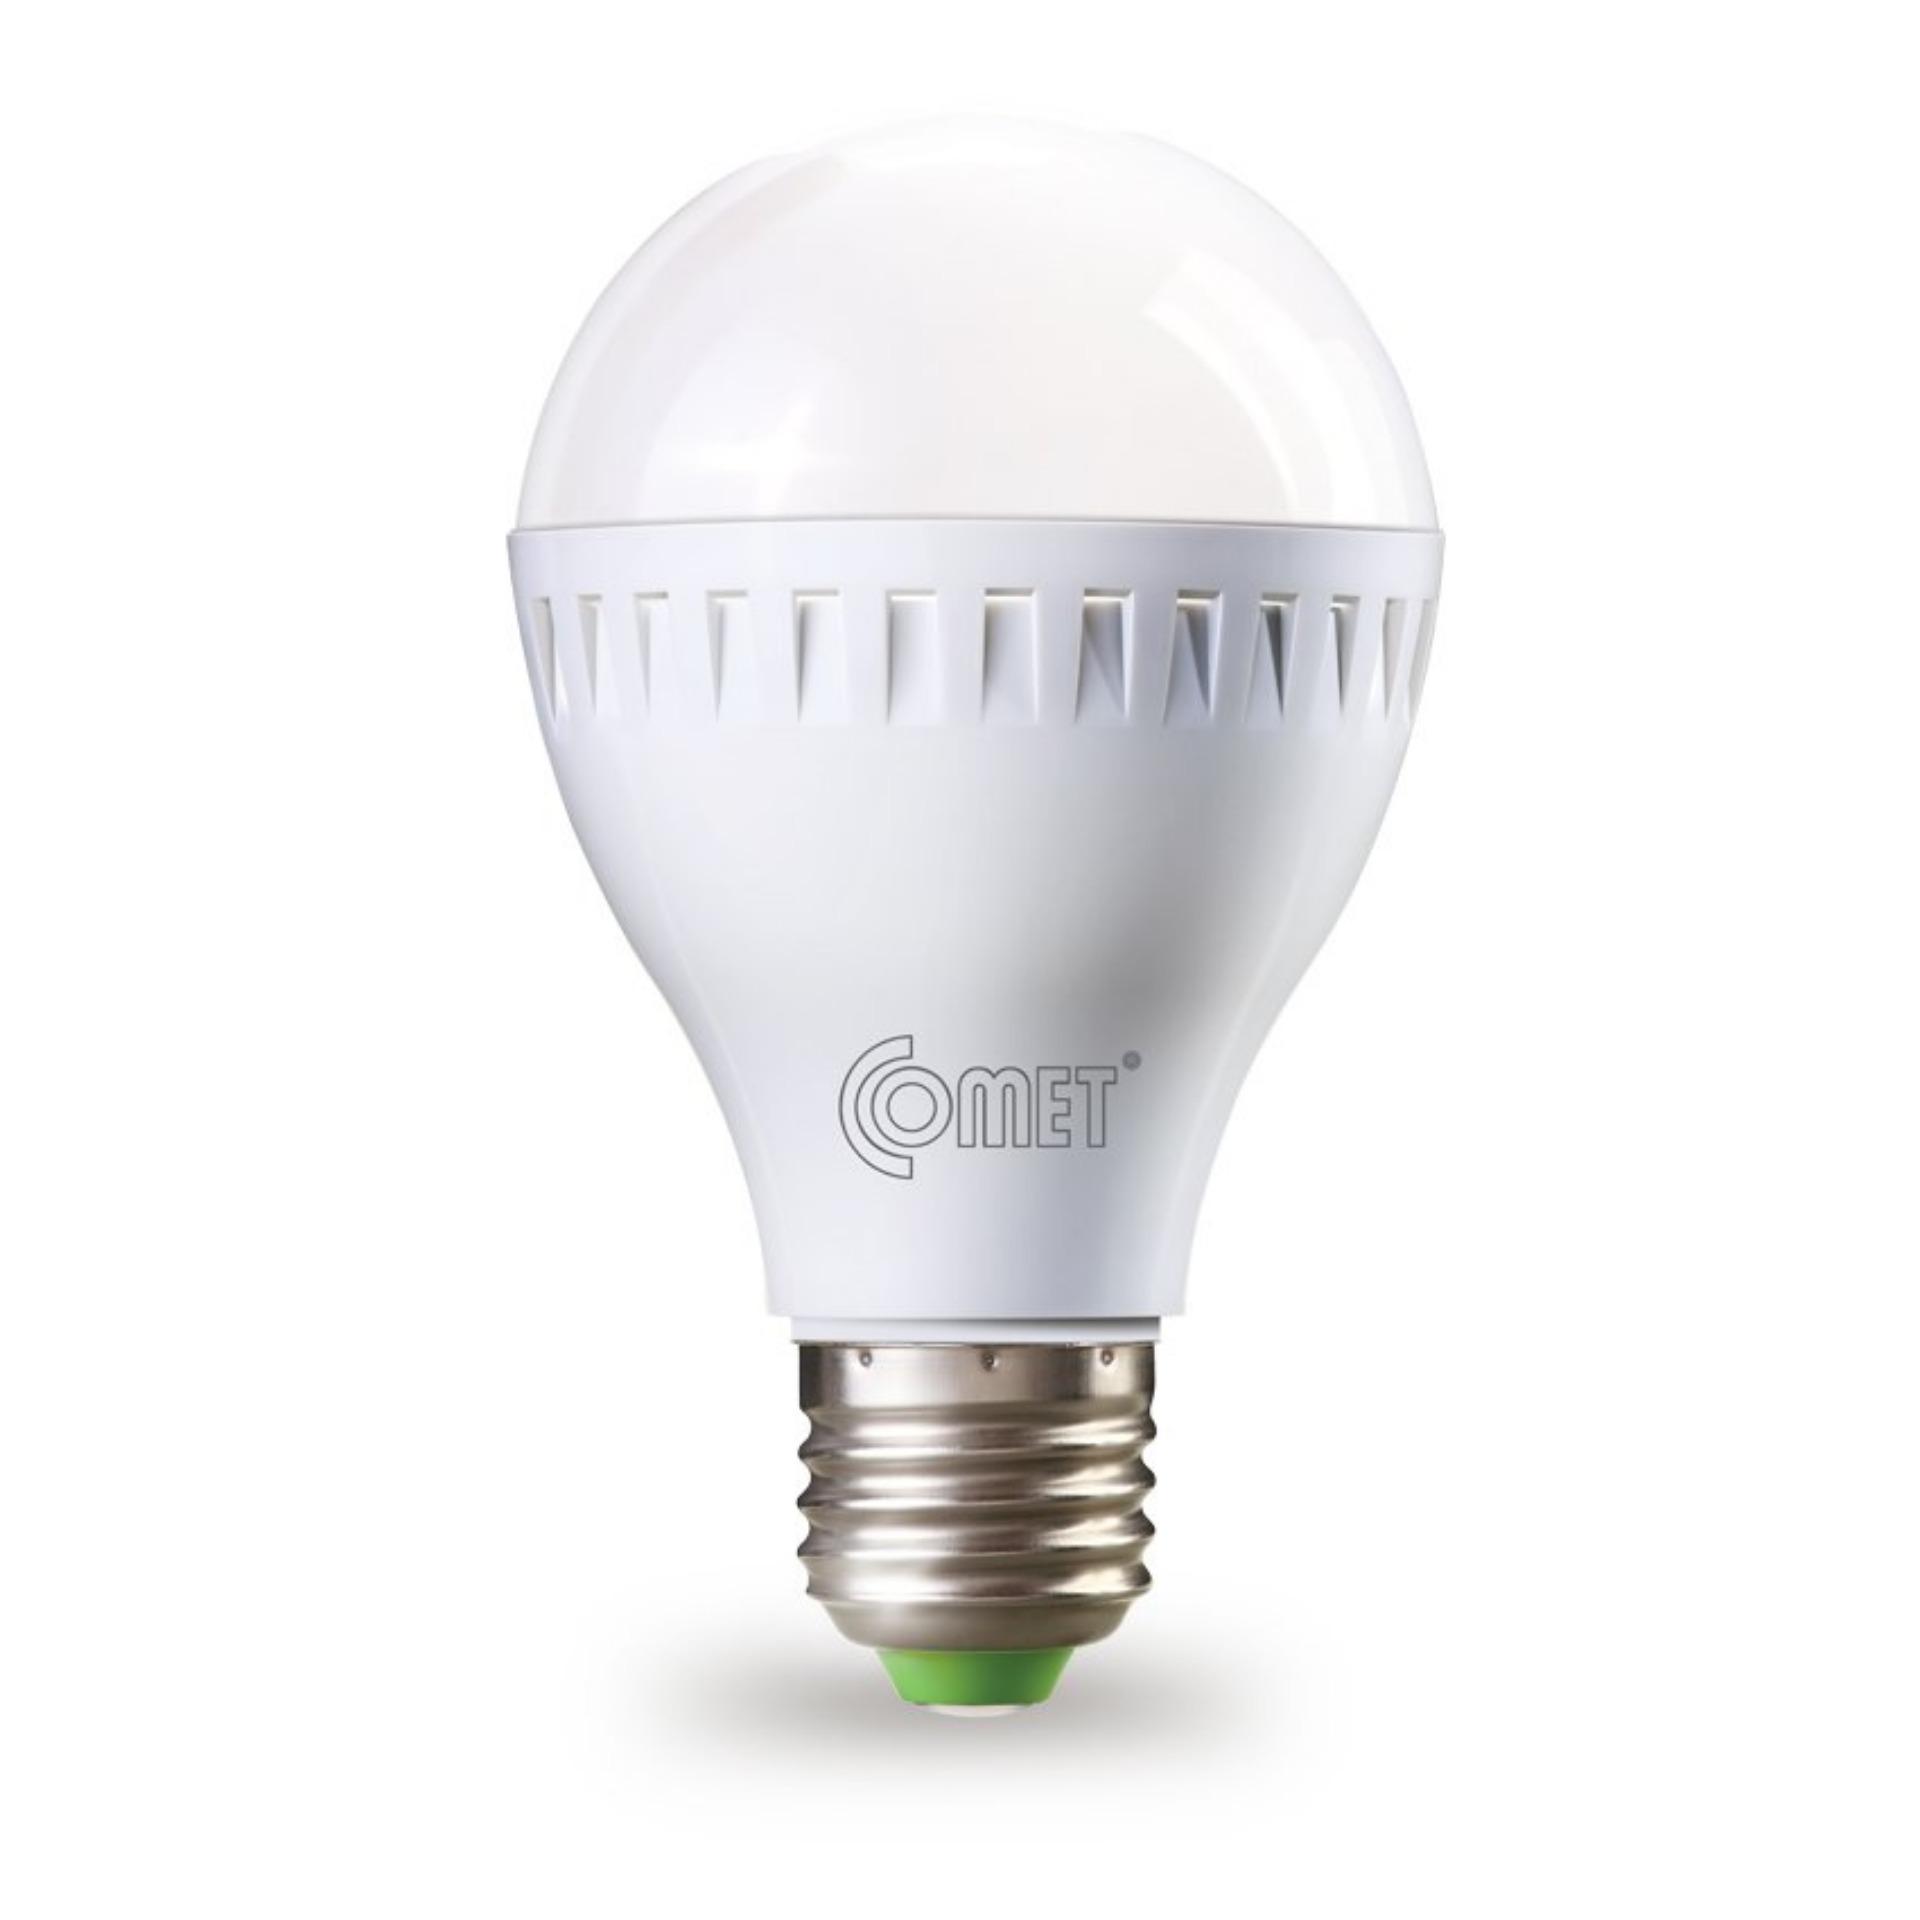 Bộ 5 bóng đèn LED Bulb COMET 5 Watt CB11-5D (Ánh sáng trắng)